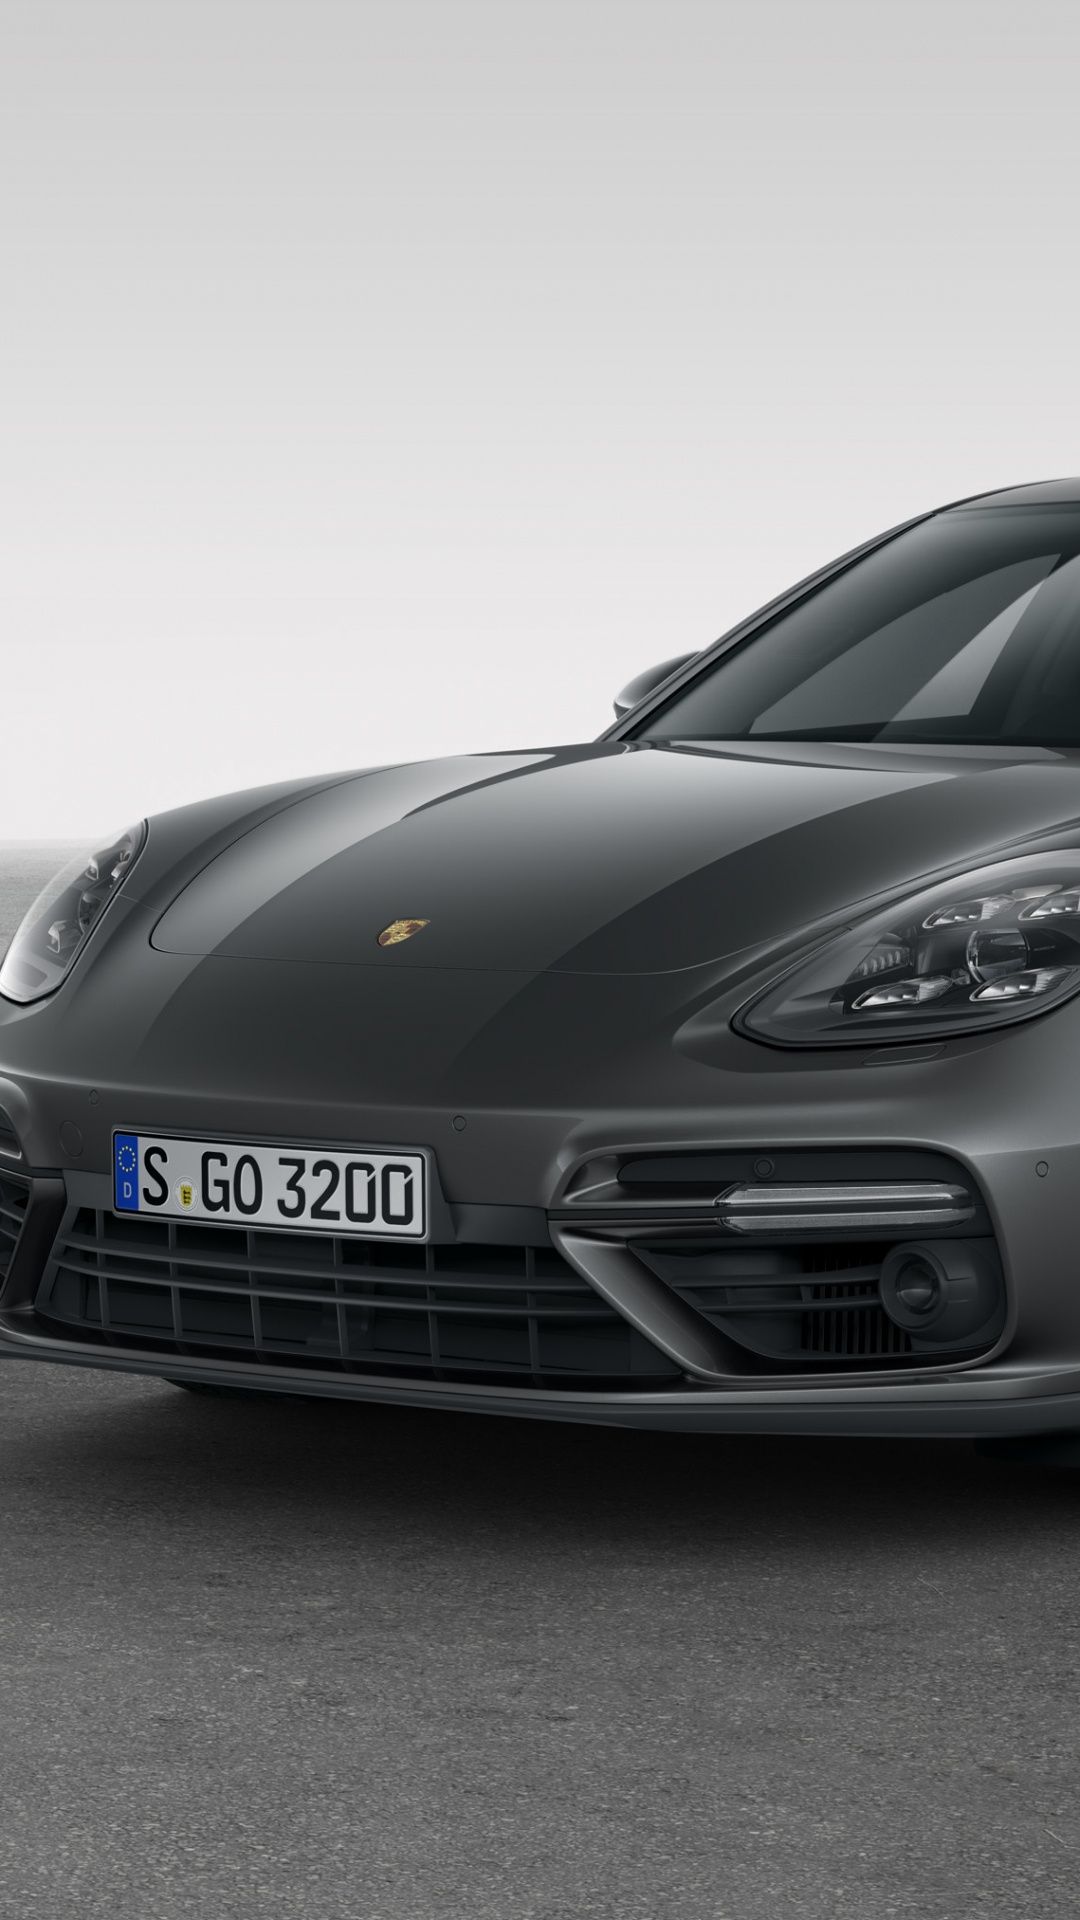 Black Porsche 911 on White Background. Wallpaper in 1080x1920 Resolution